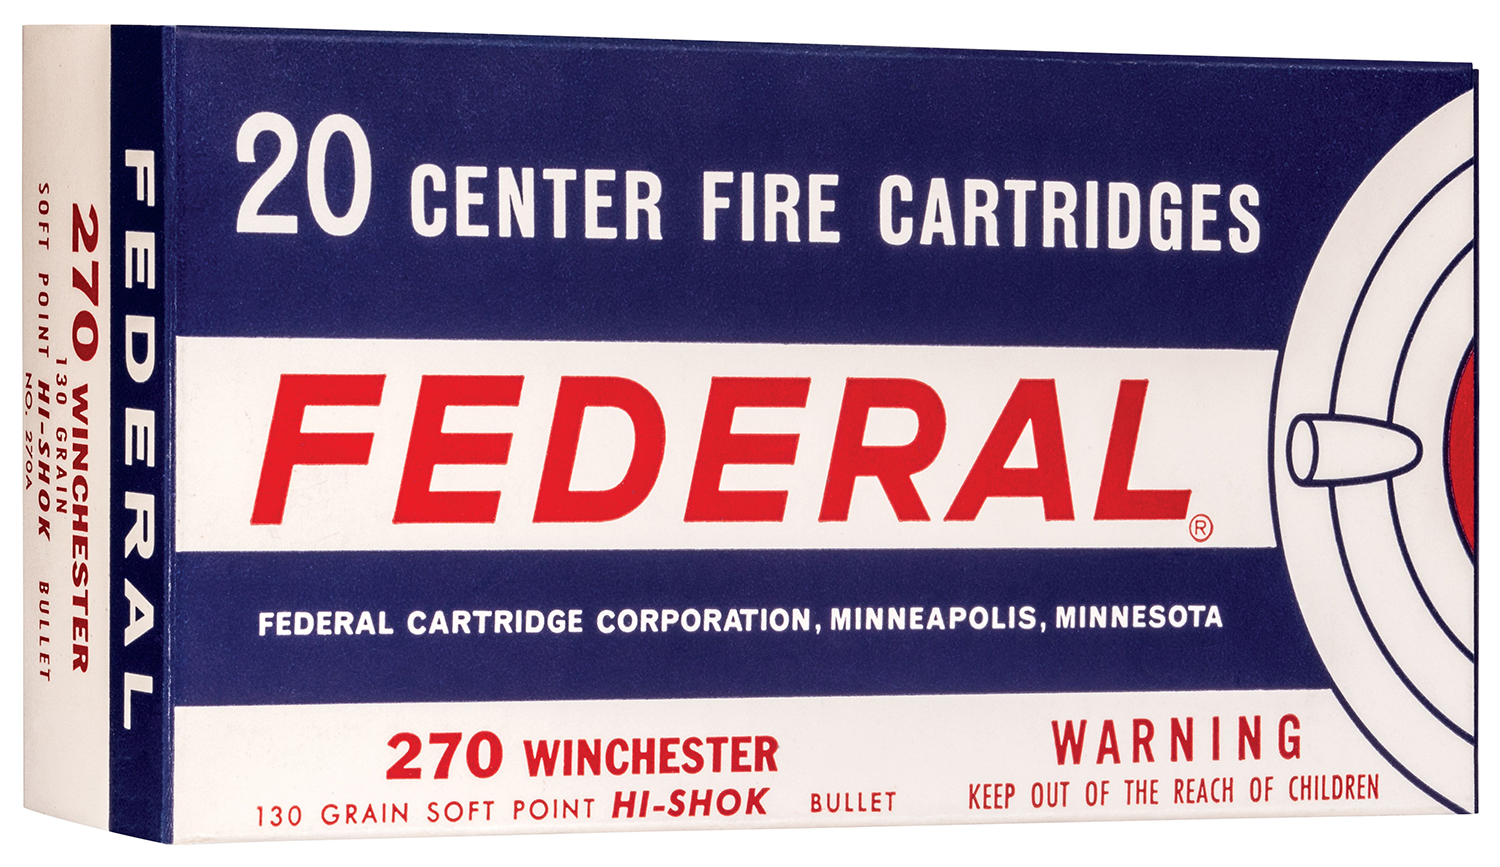 federal center fire